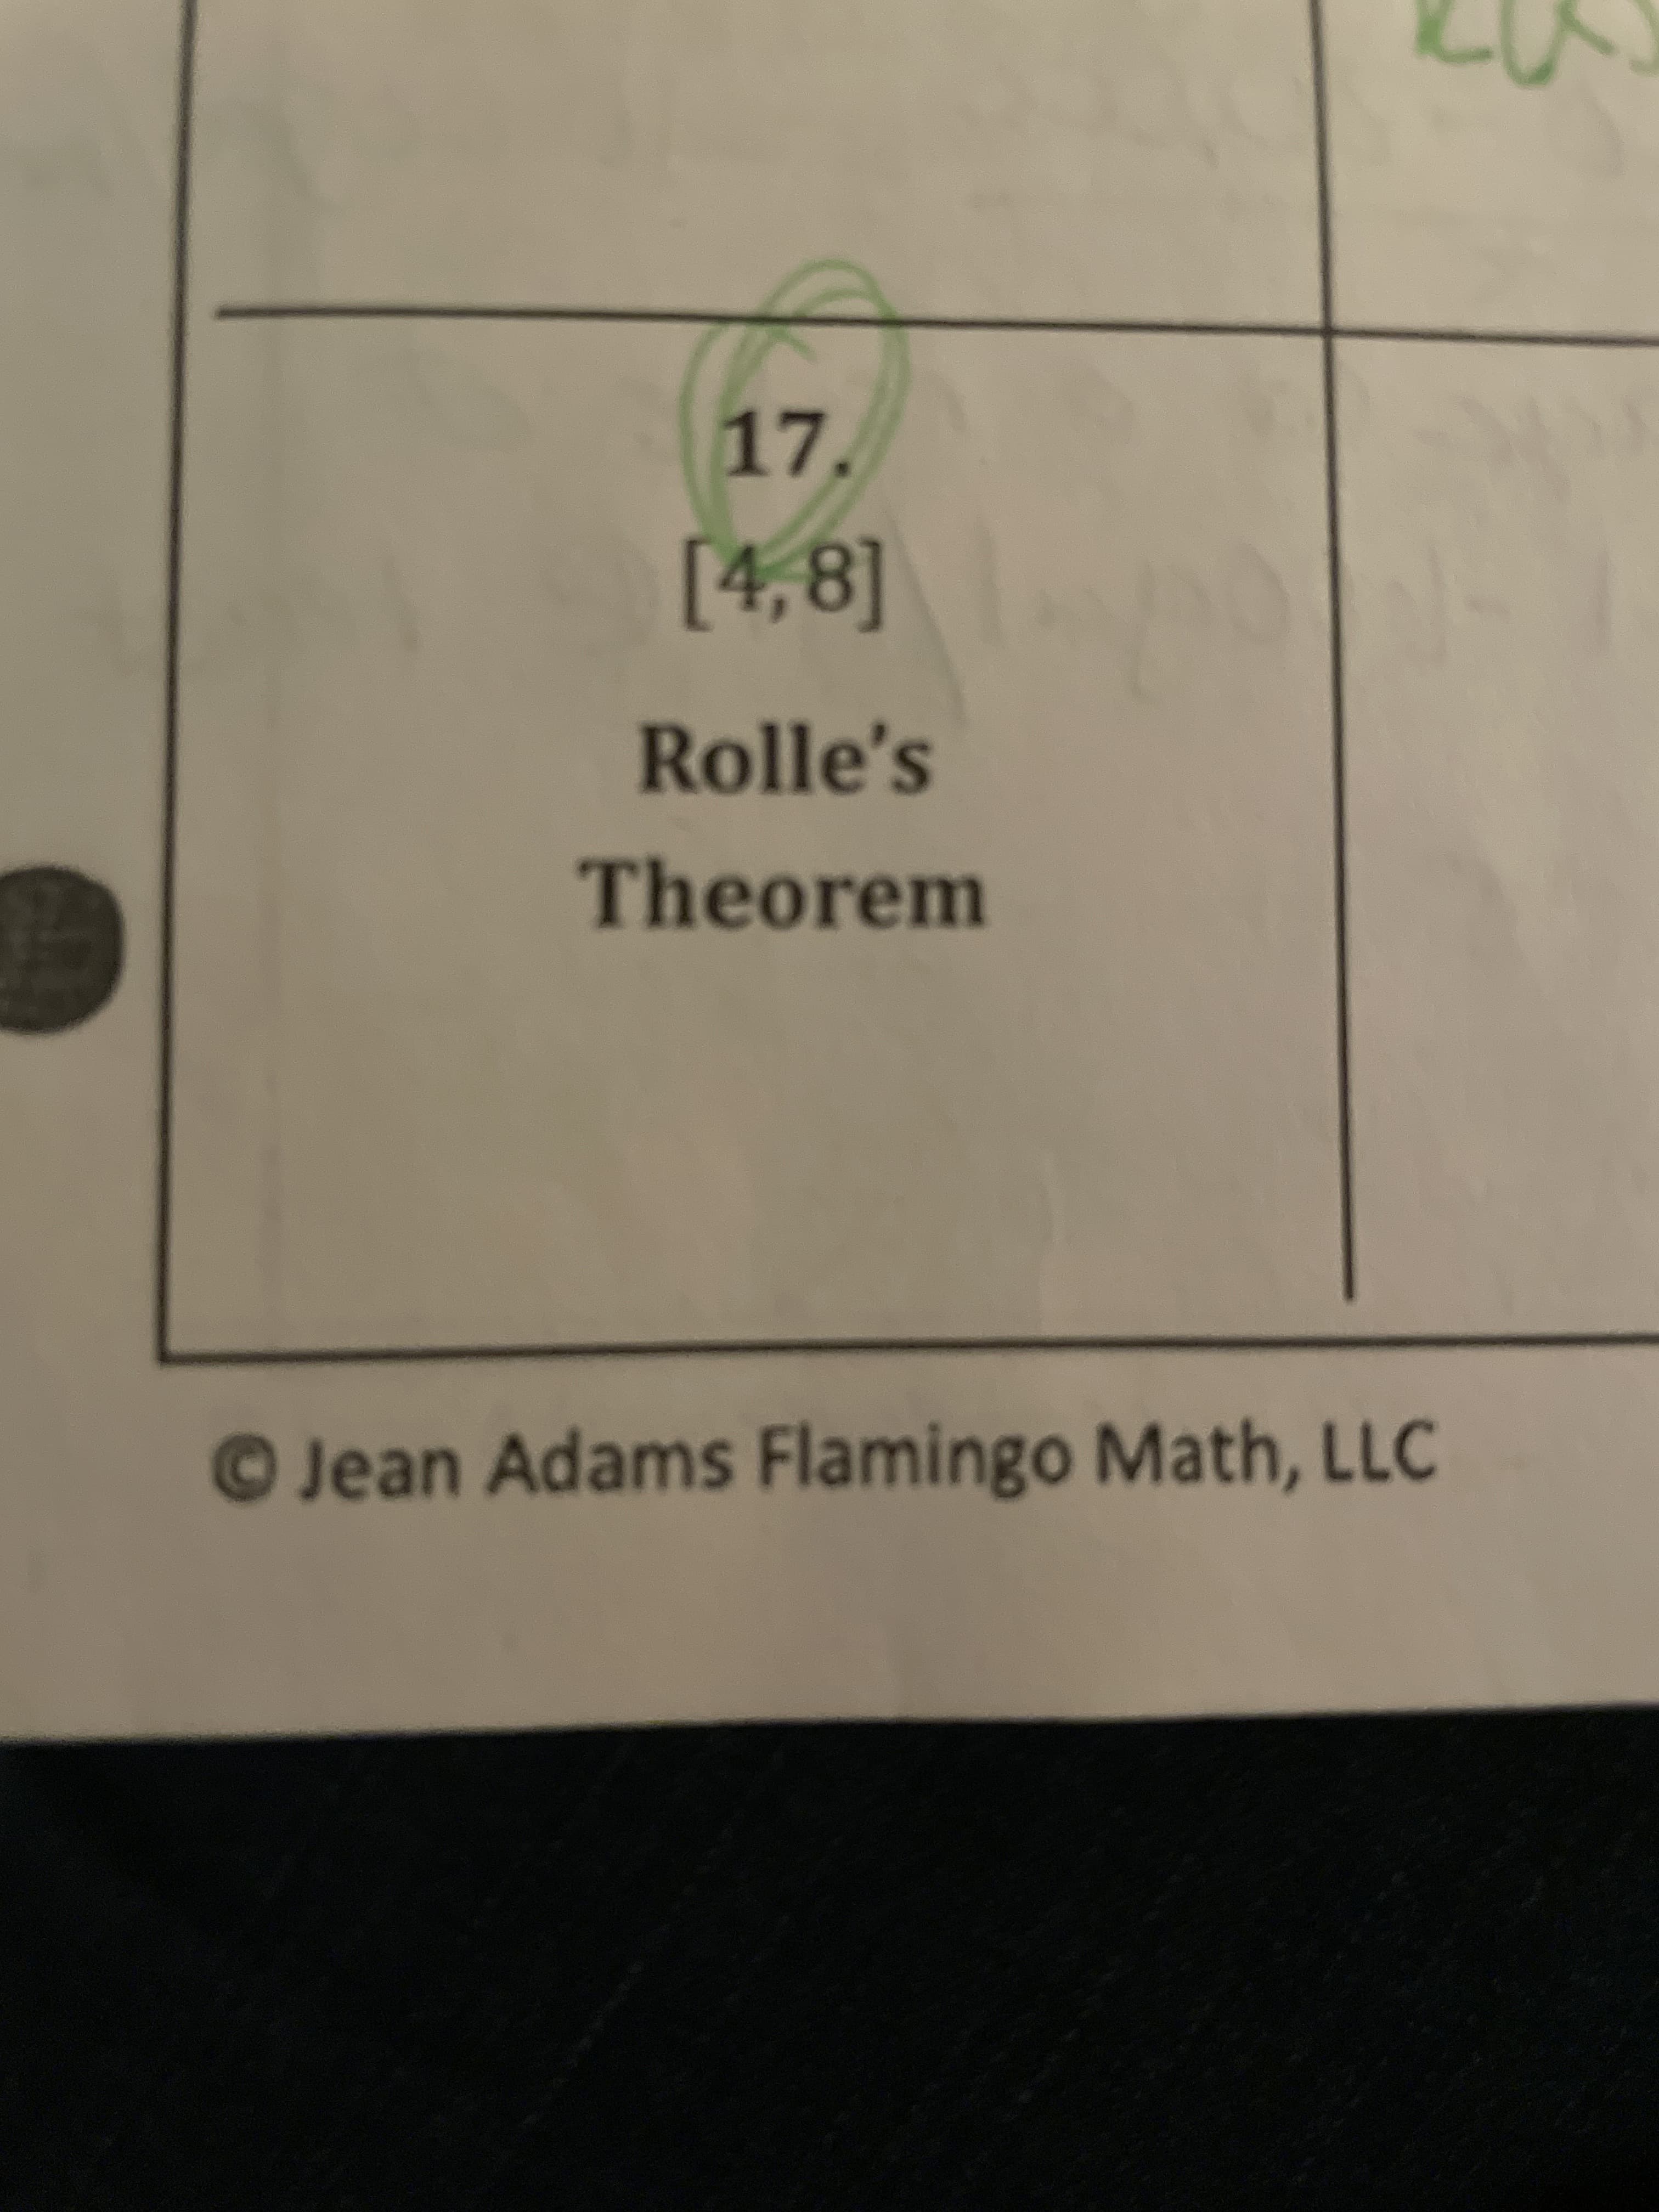 17
7.
[4,8]
Rolle's
Theorem
OJean Adams Flamingo Math, LLC
